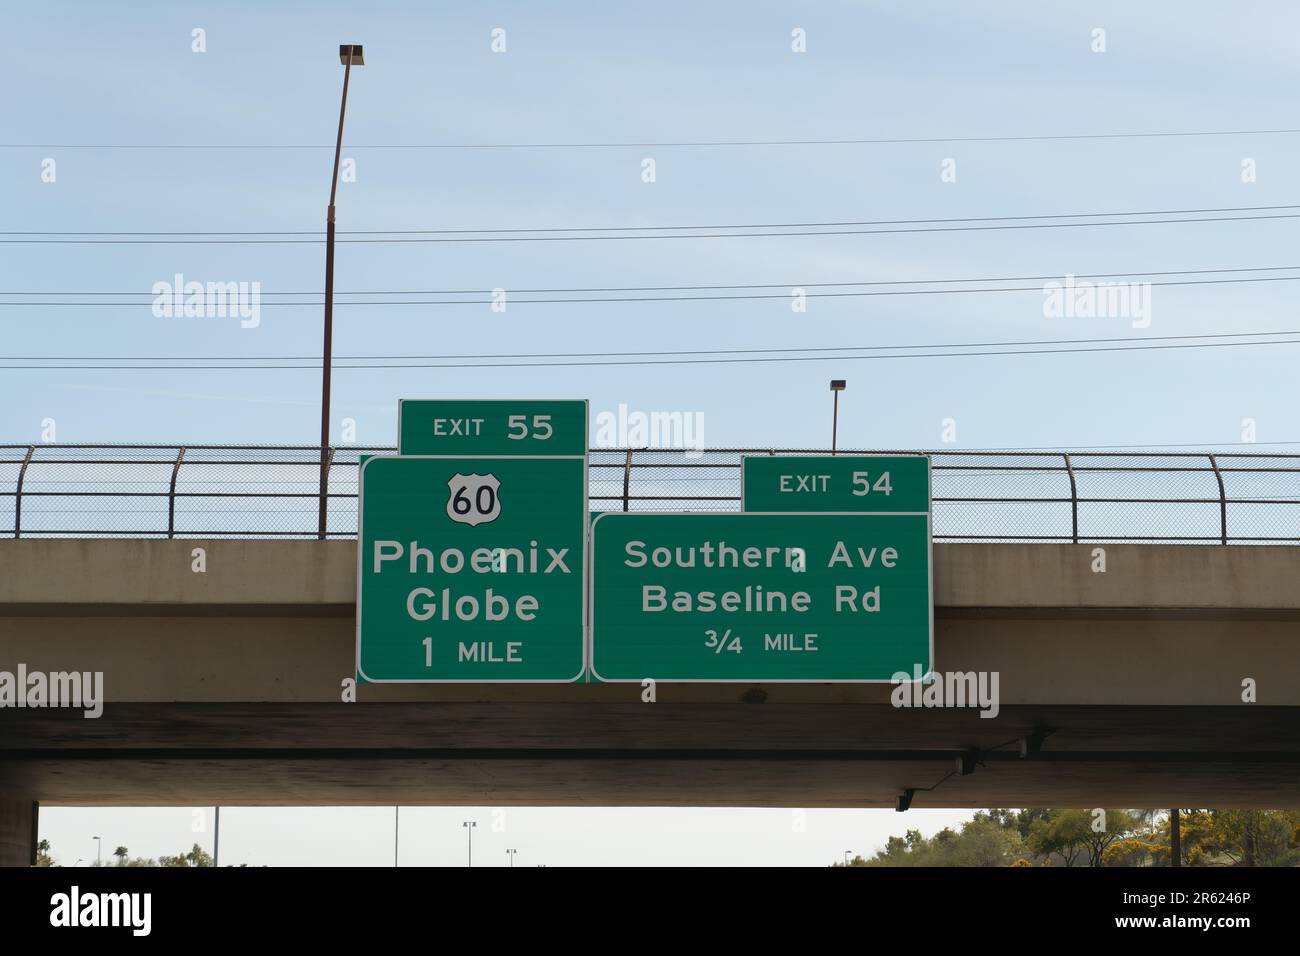 Suivez les panneaux sur la bretelle AZ 101 pour la sortie 55 US 60 vers Phoenix et Globe, et prenez la sortie 54 vers Southern Ave et Baseline Rd Banque D'Images